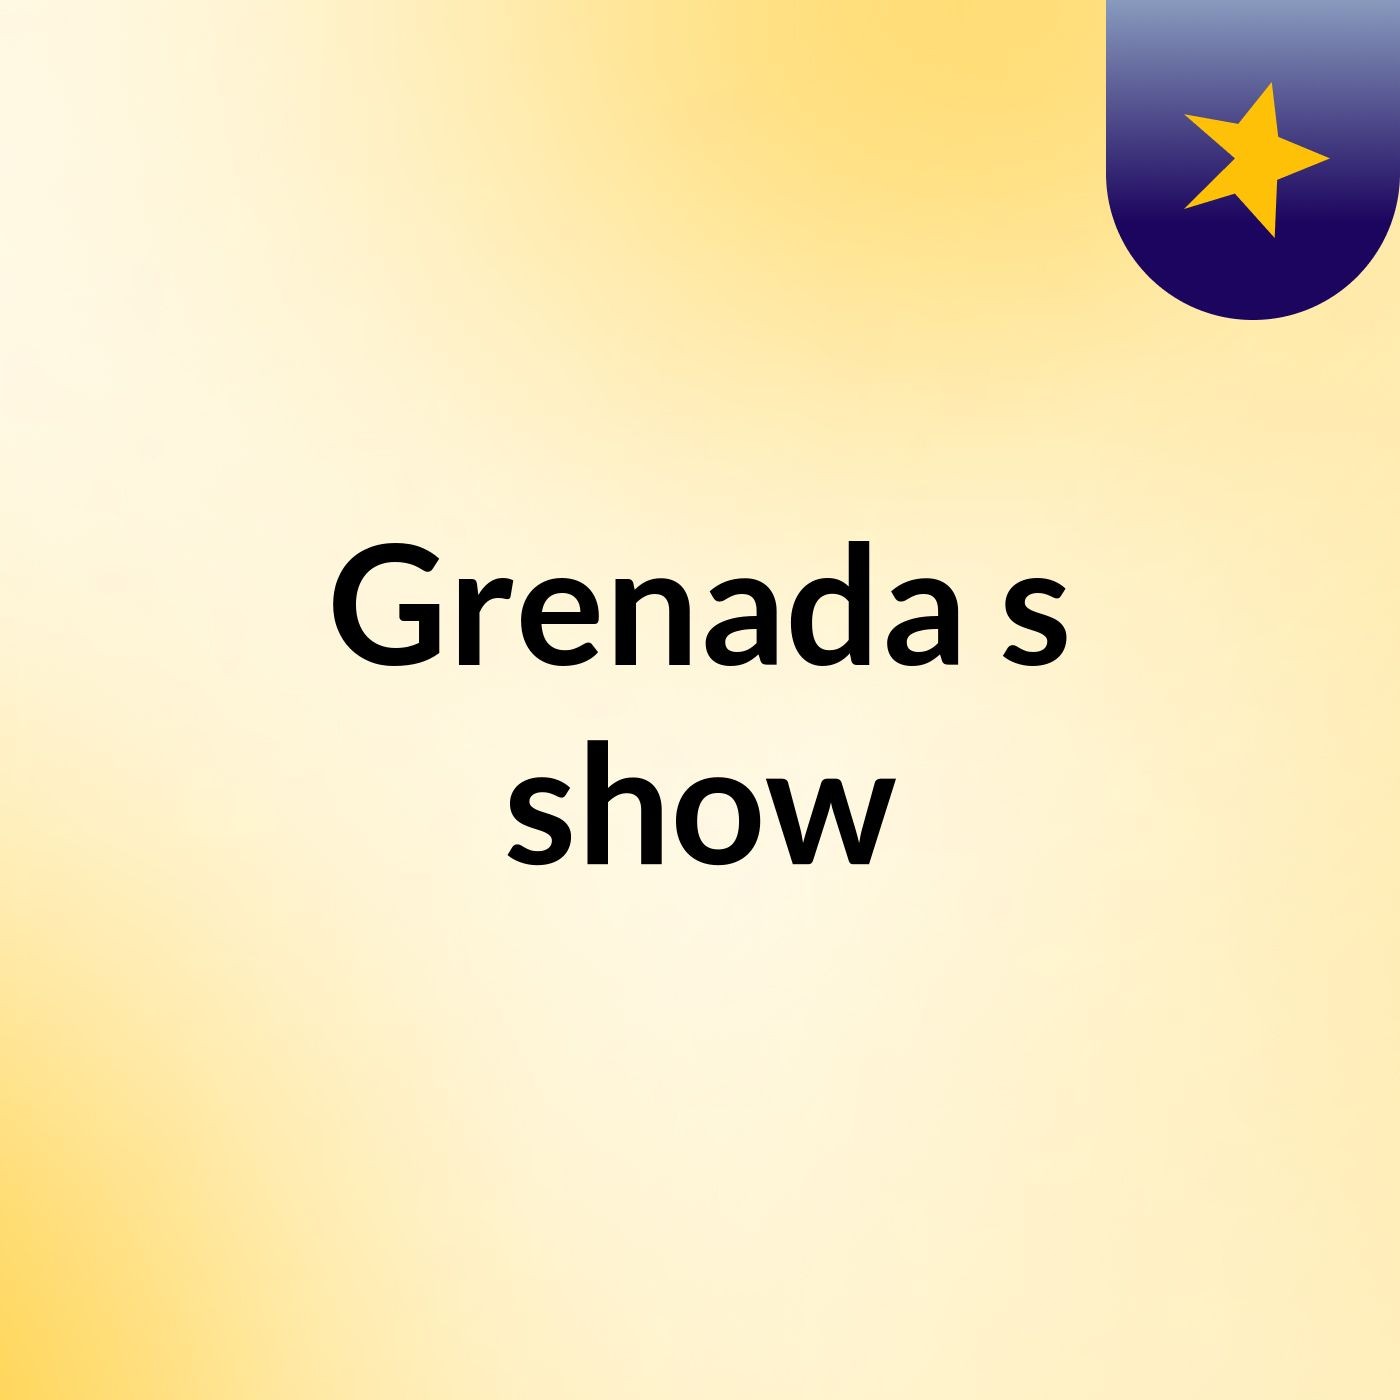 Grenada's show